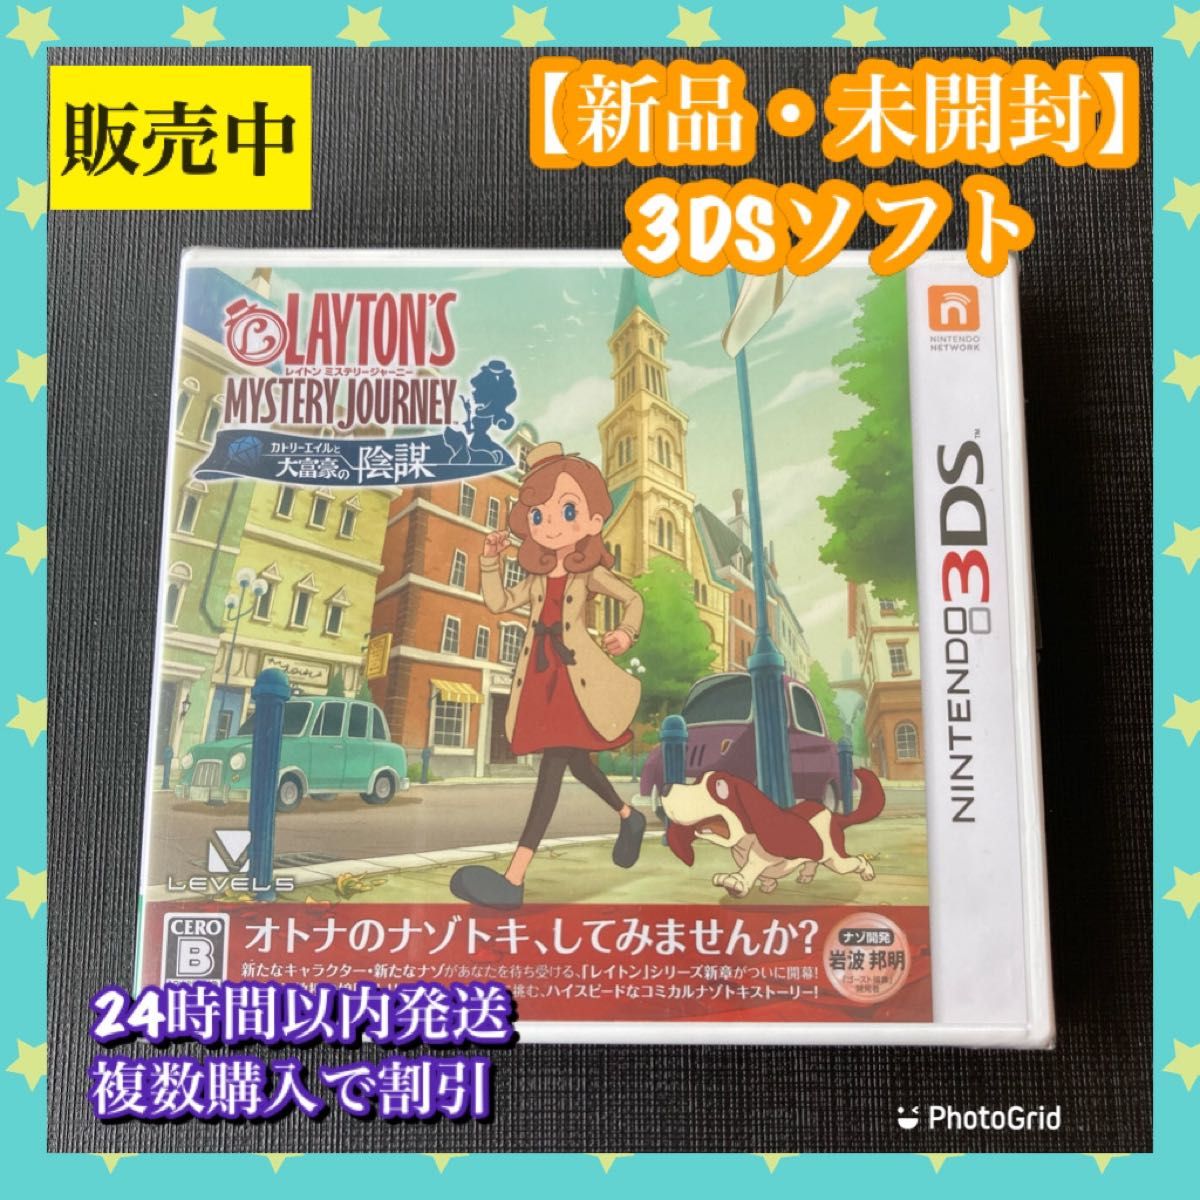 【新品3DS】レイトン ミステリージャーニー カトリーエイルと大富豪の陰謀